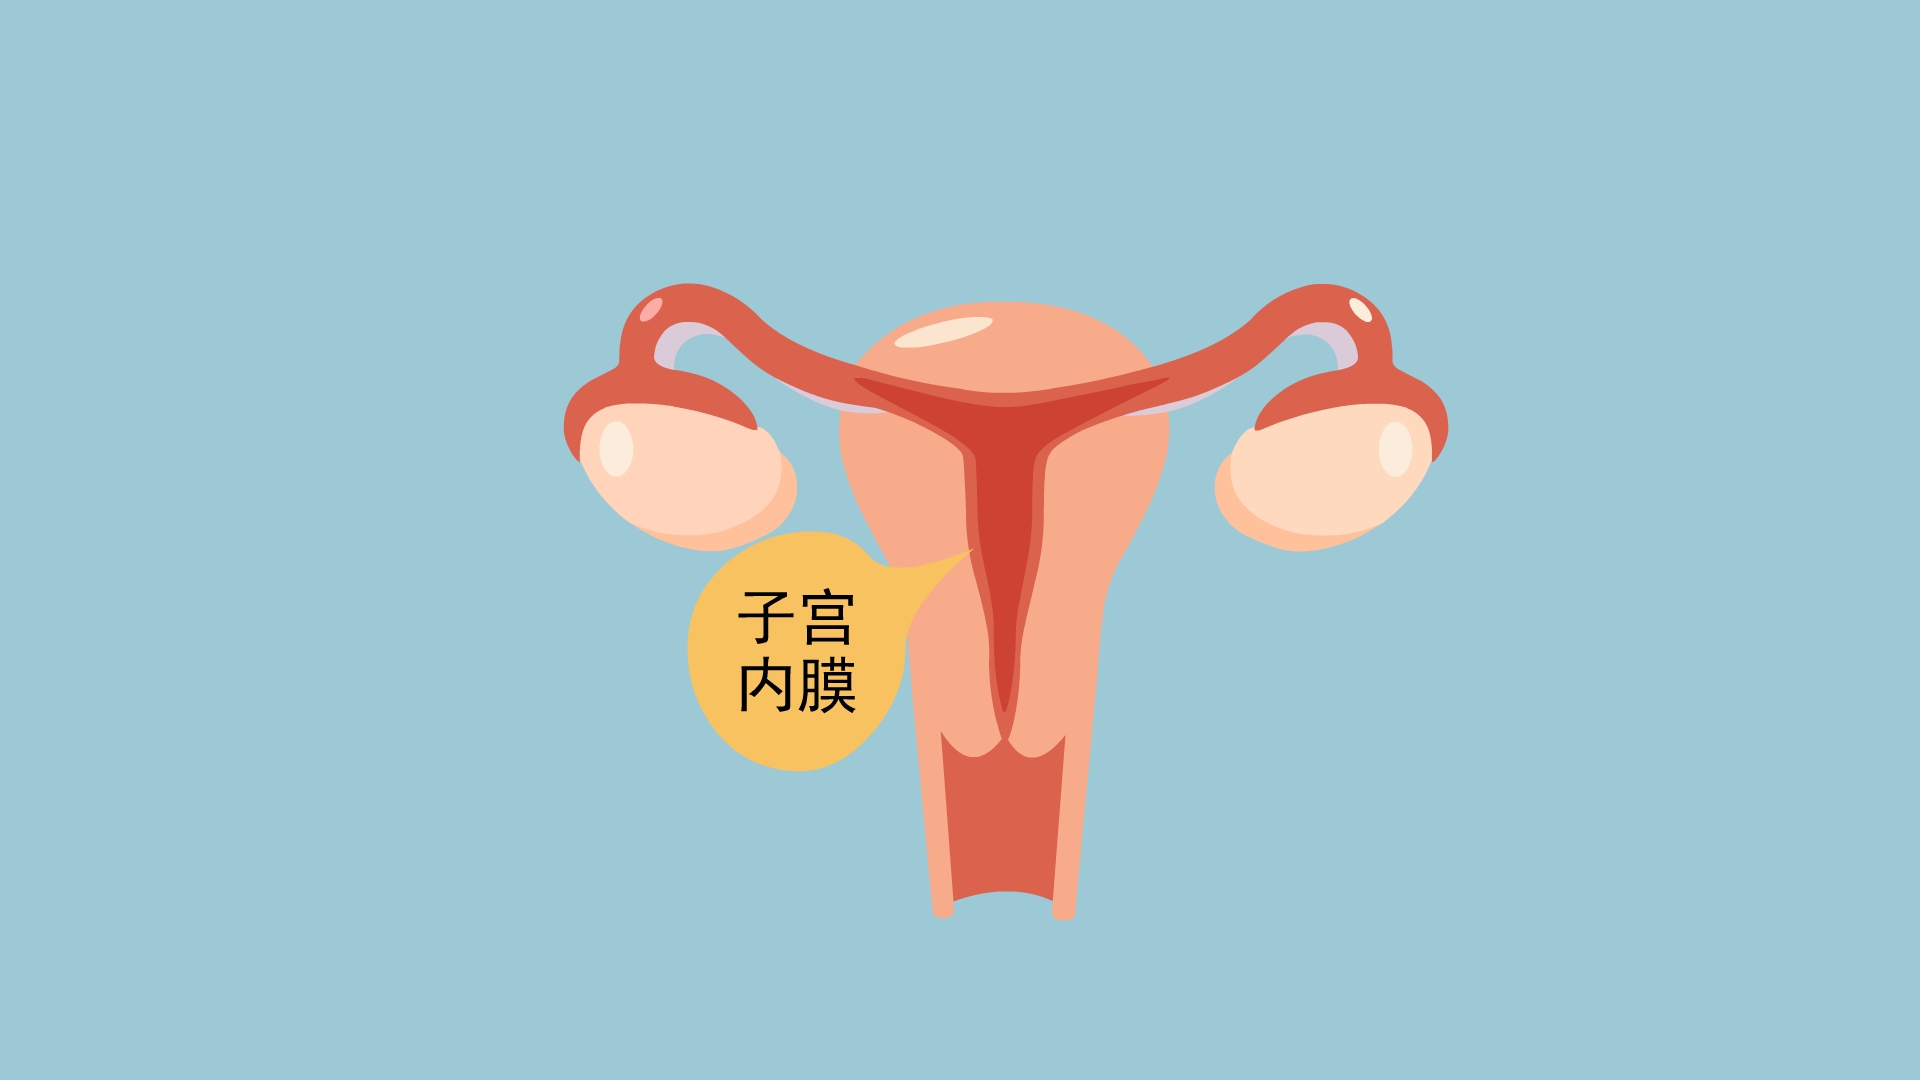 贝安健康:子宫内膜增厚,主要是这六种原因导致的!